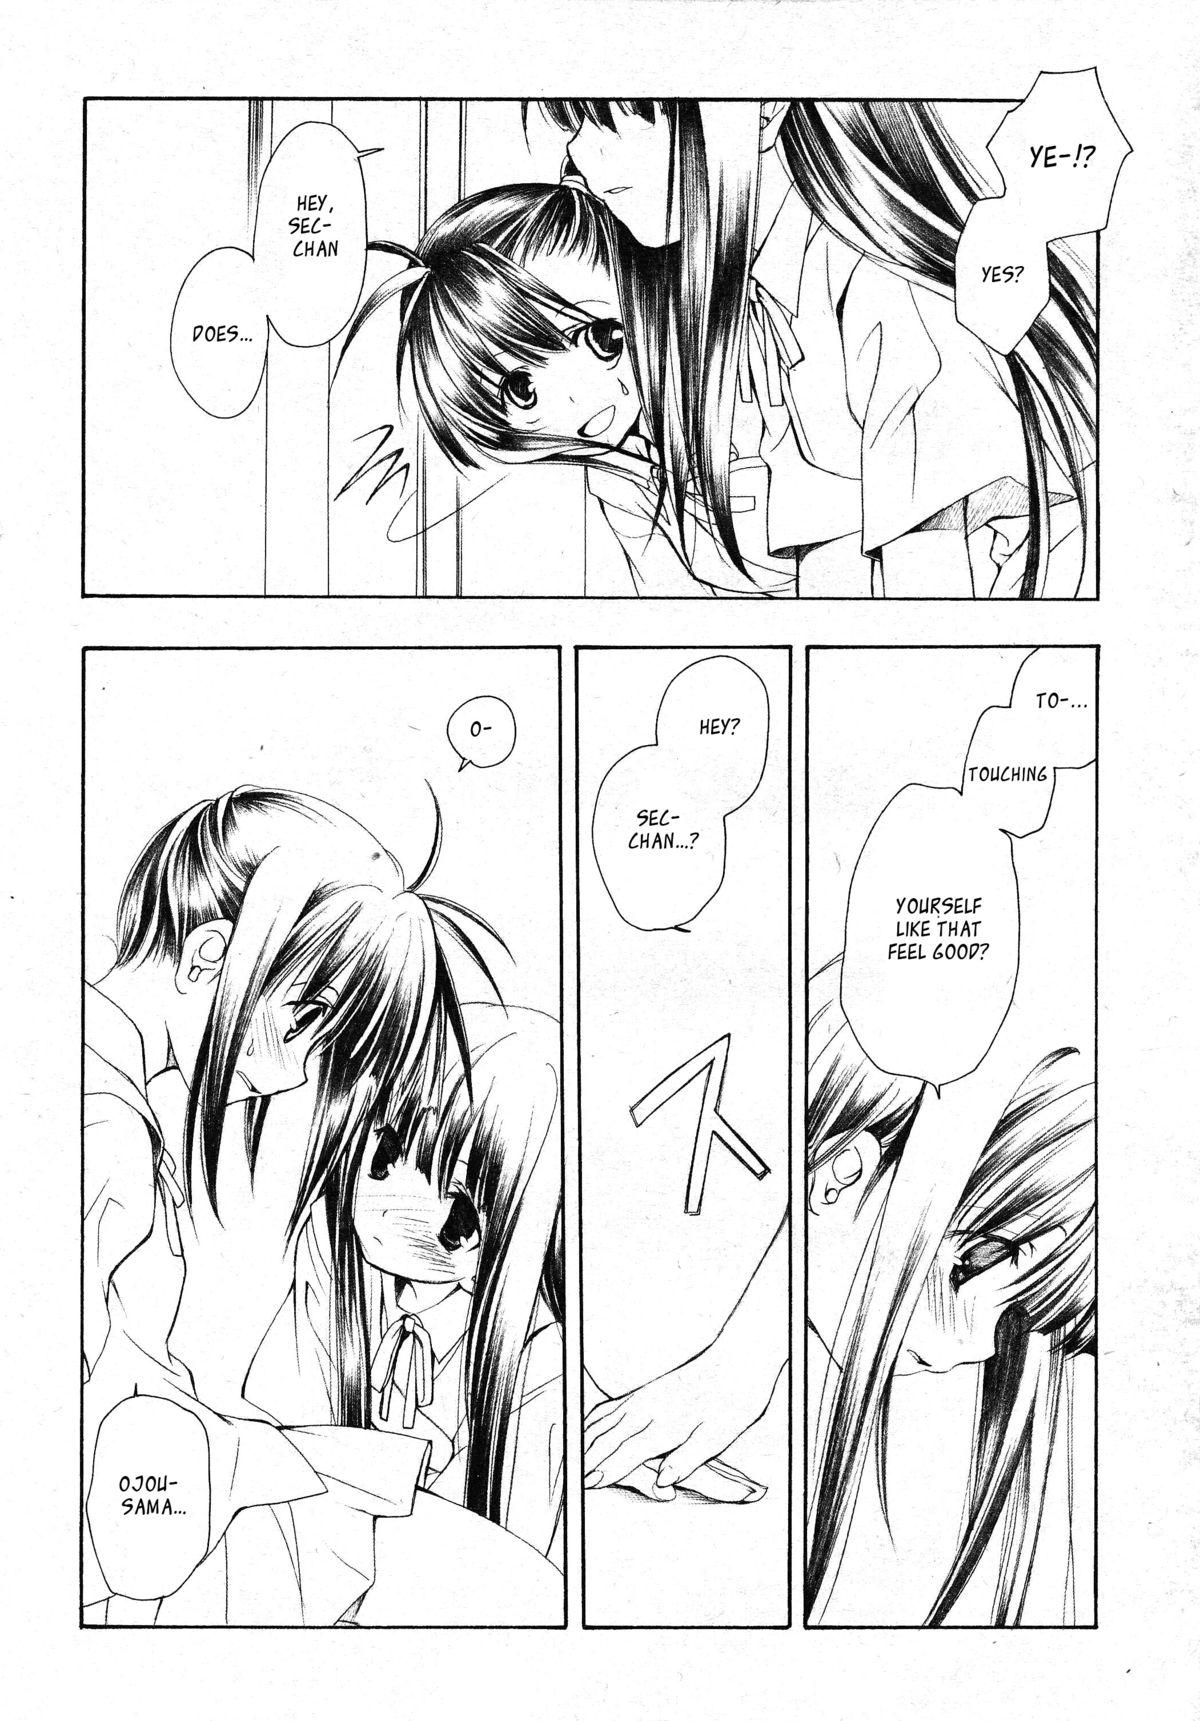 Mms Evangeline - Mahou sensei negima Ass Lick - Page 13